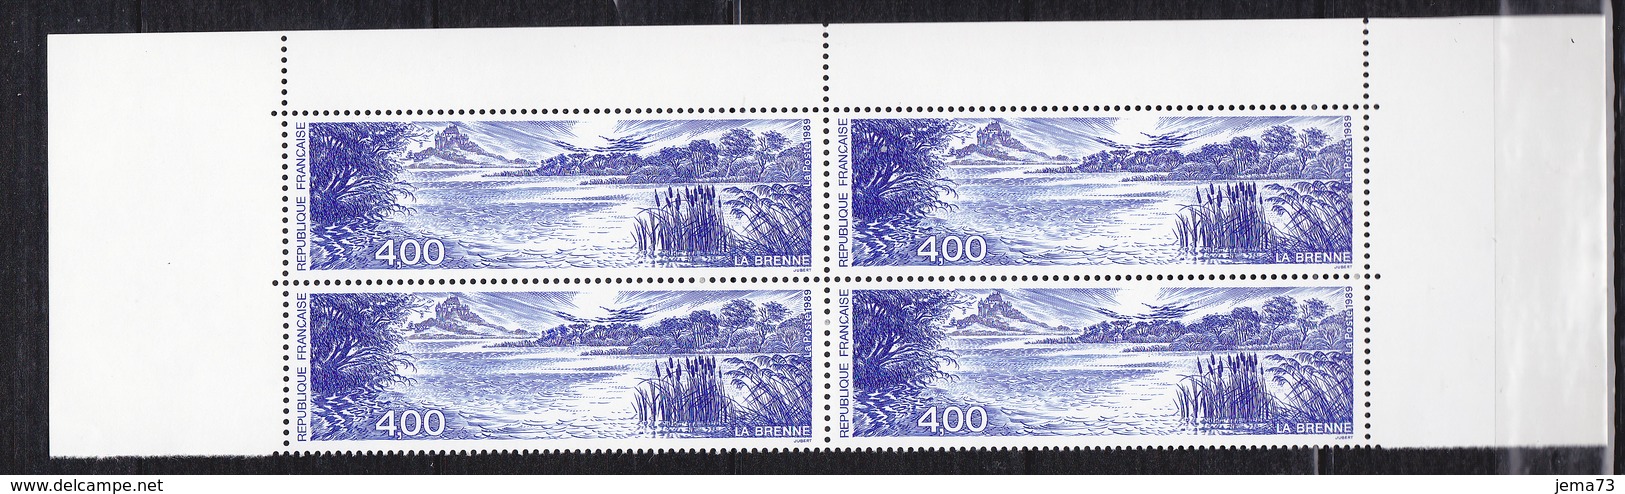 N° 2601 Série Touristique: La Brenne Bloc De 4 Timbres Neuf Impecable - Unused Stamps